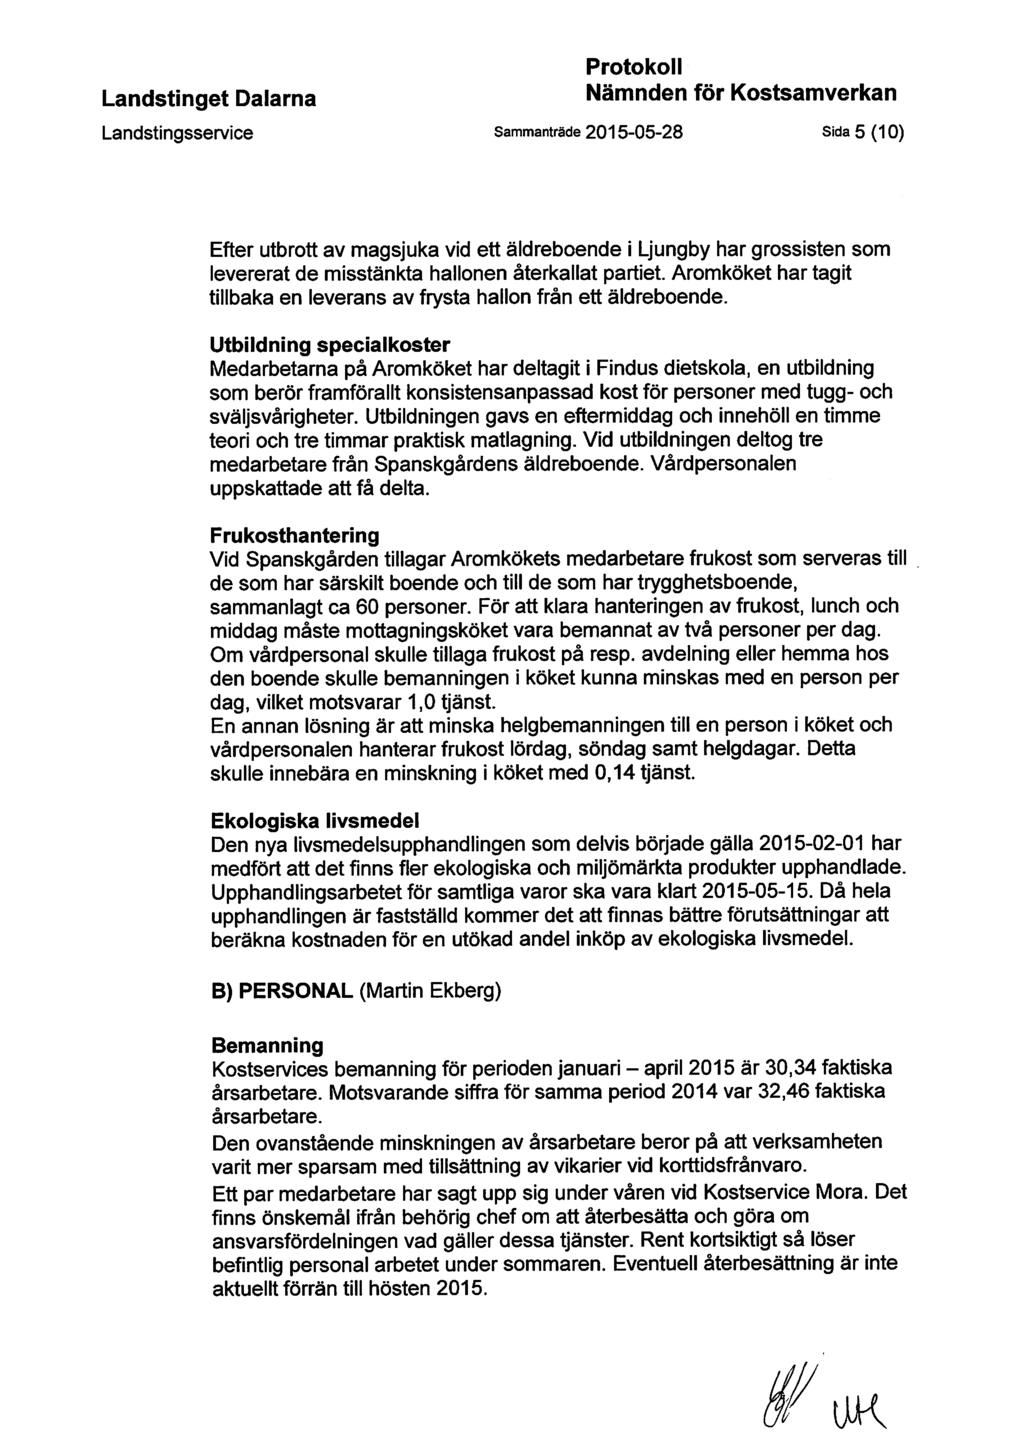 Protokoll Landstingsservice Sammanträde 2015-05-28 Sida 5 (10) Efter utbrott av magsjuka vid ett äldreboende i Ljungby har grossisten som levererat de misstänkta hallonen återkallat partiet.